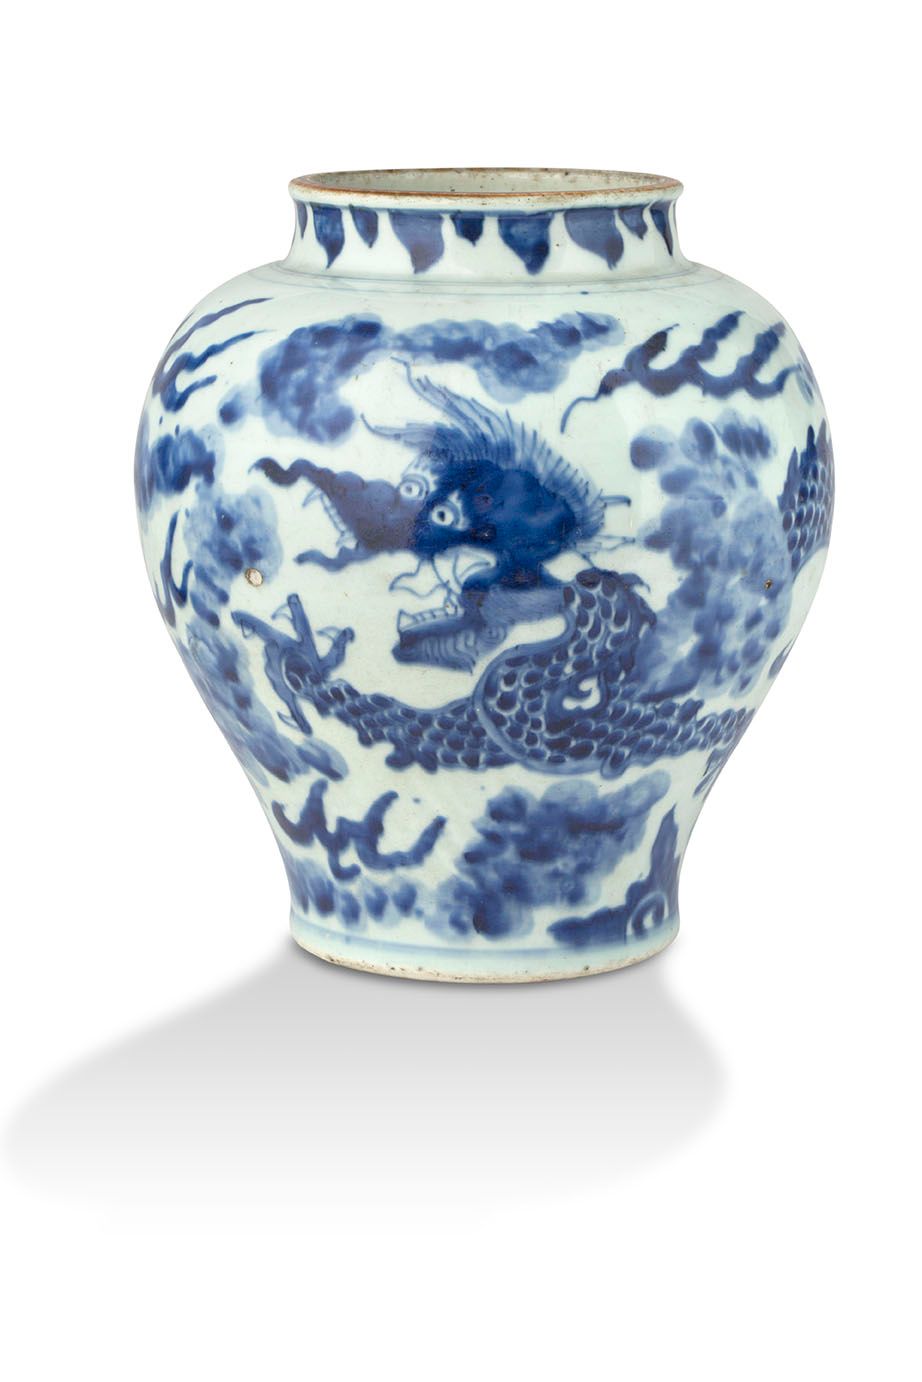 CHINE PÉRIODE TRANSITION, MILIEU DU XVIIe SIÈCLE Jarrón
De porcelana azul y blan&hellip;